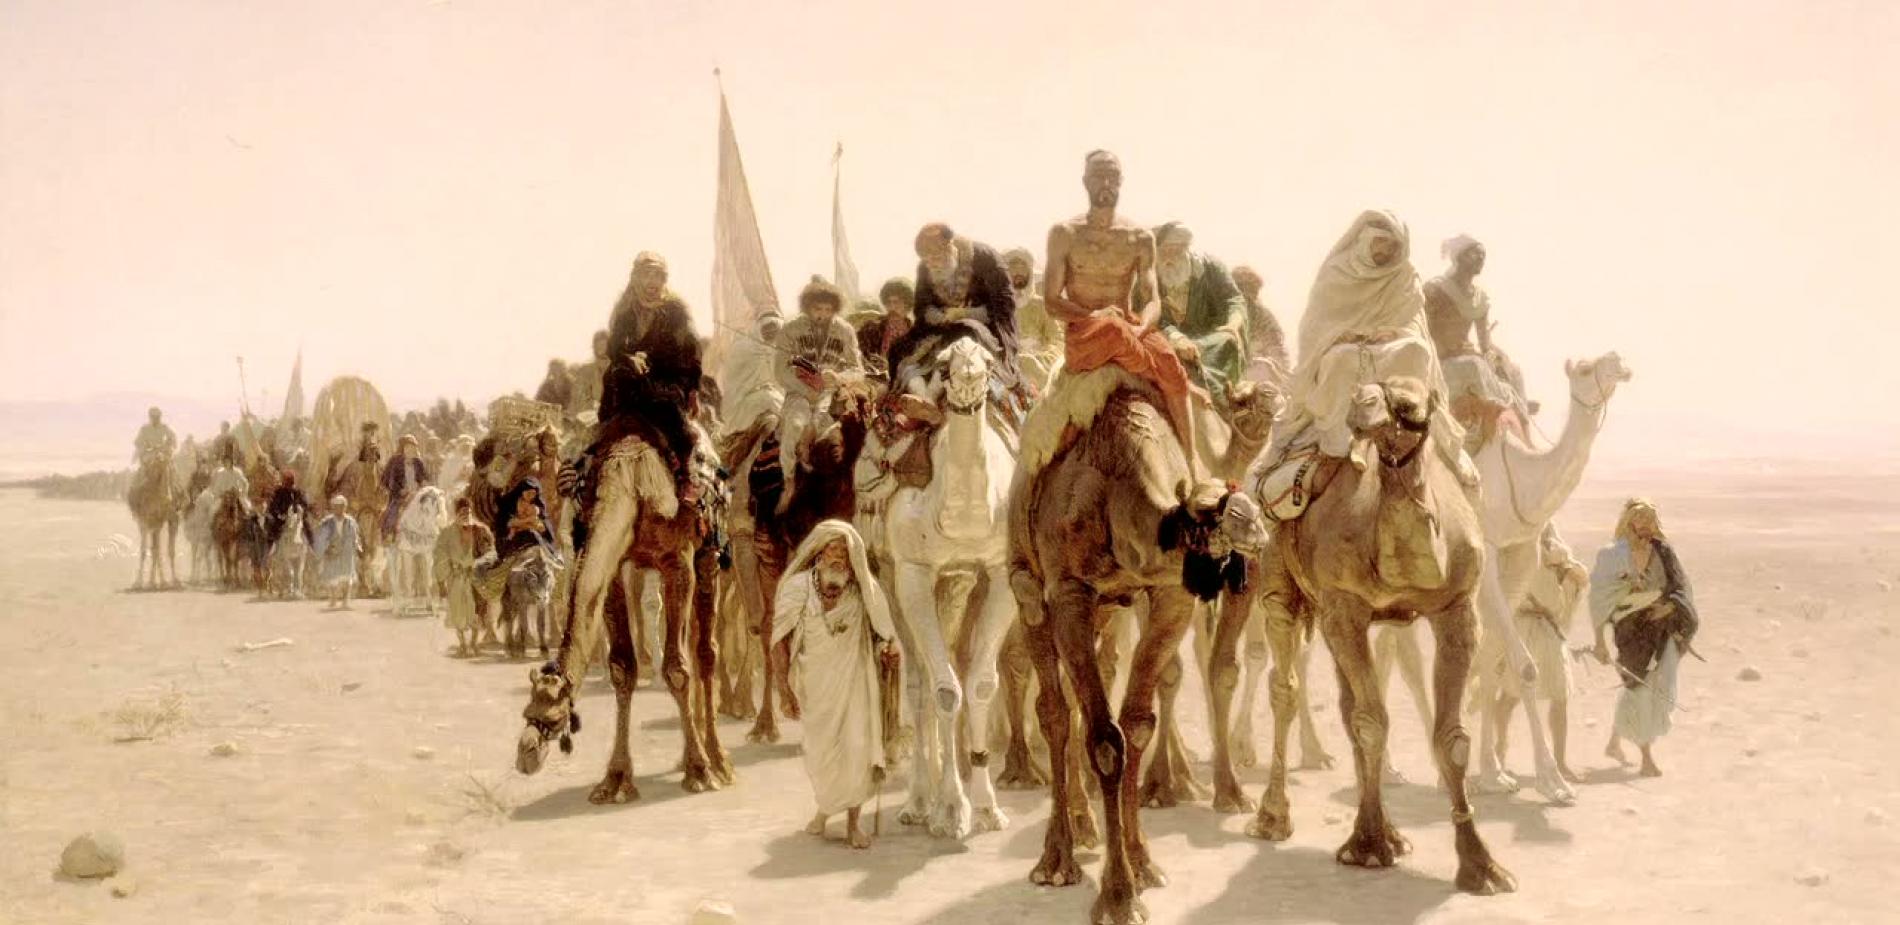 La Peinture orientaliste a la cote dans le monde arabe!